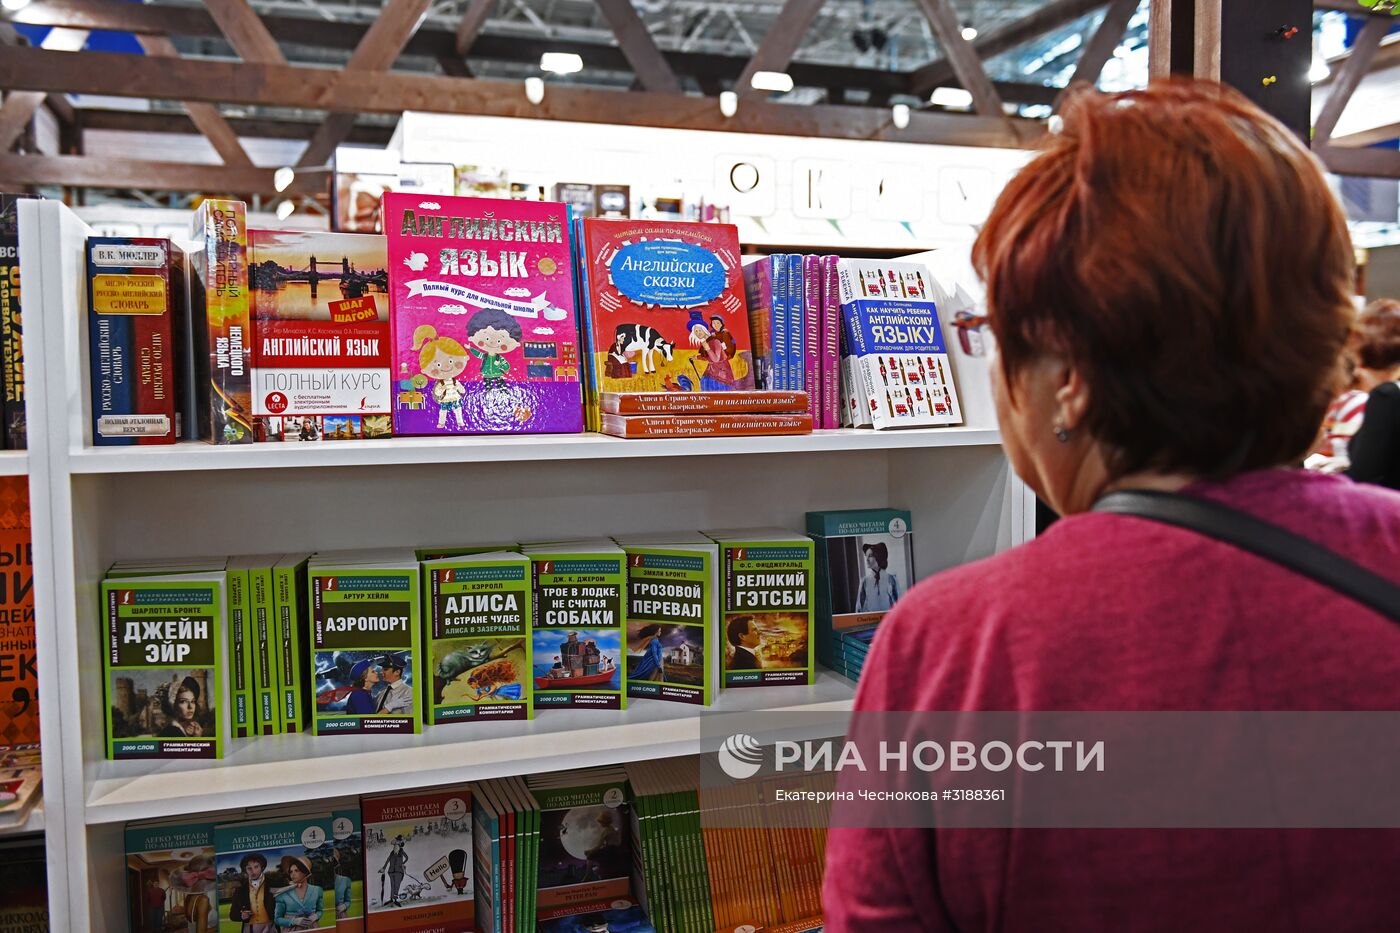 30-я Московская международная книжная выставка-ярмарка. День третий